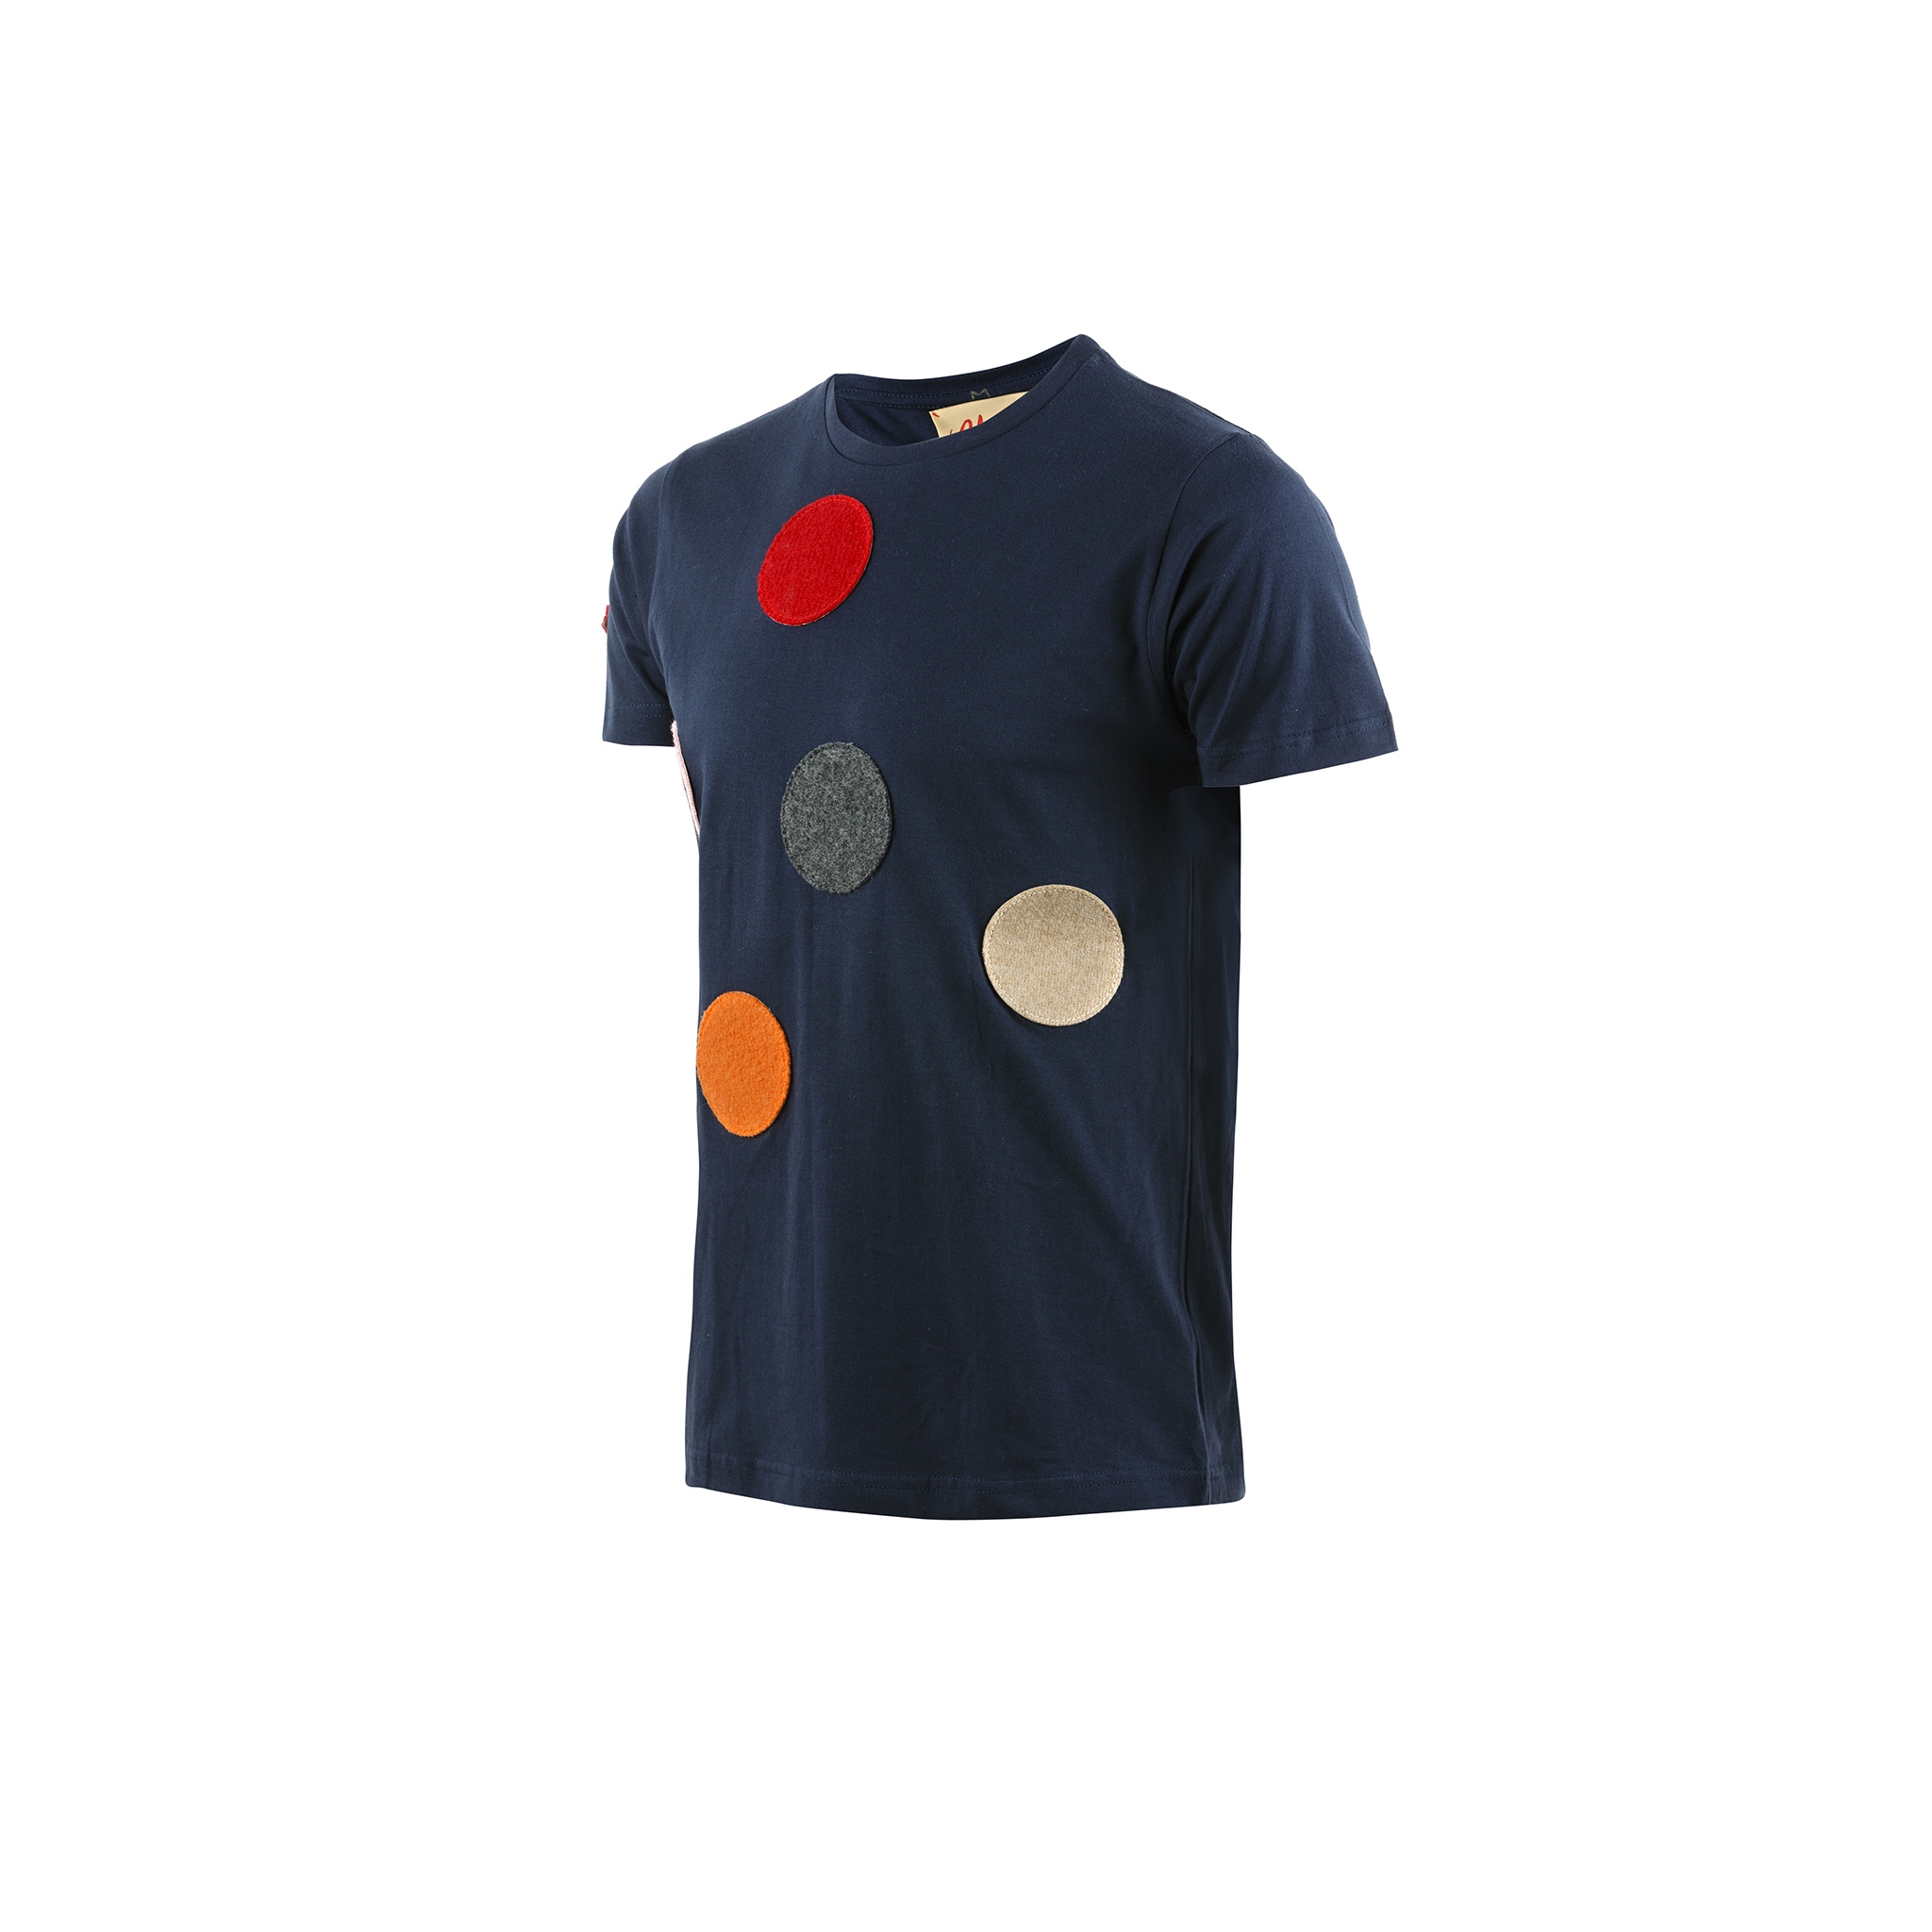 T-shirt Spot - Jersey de coton et laine - Couleur bleu